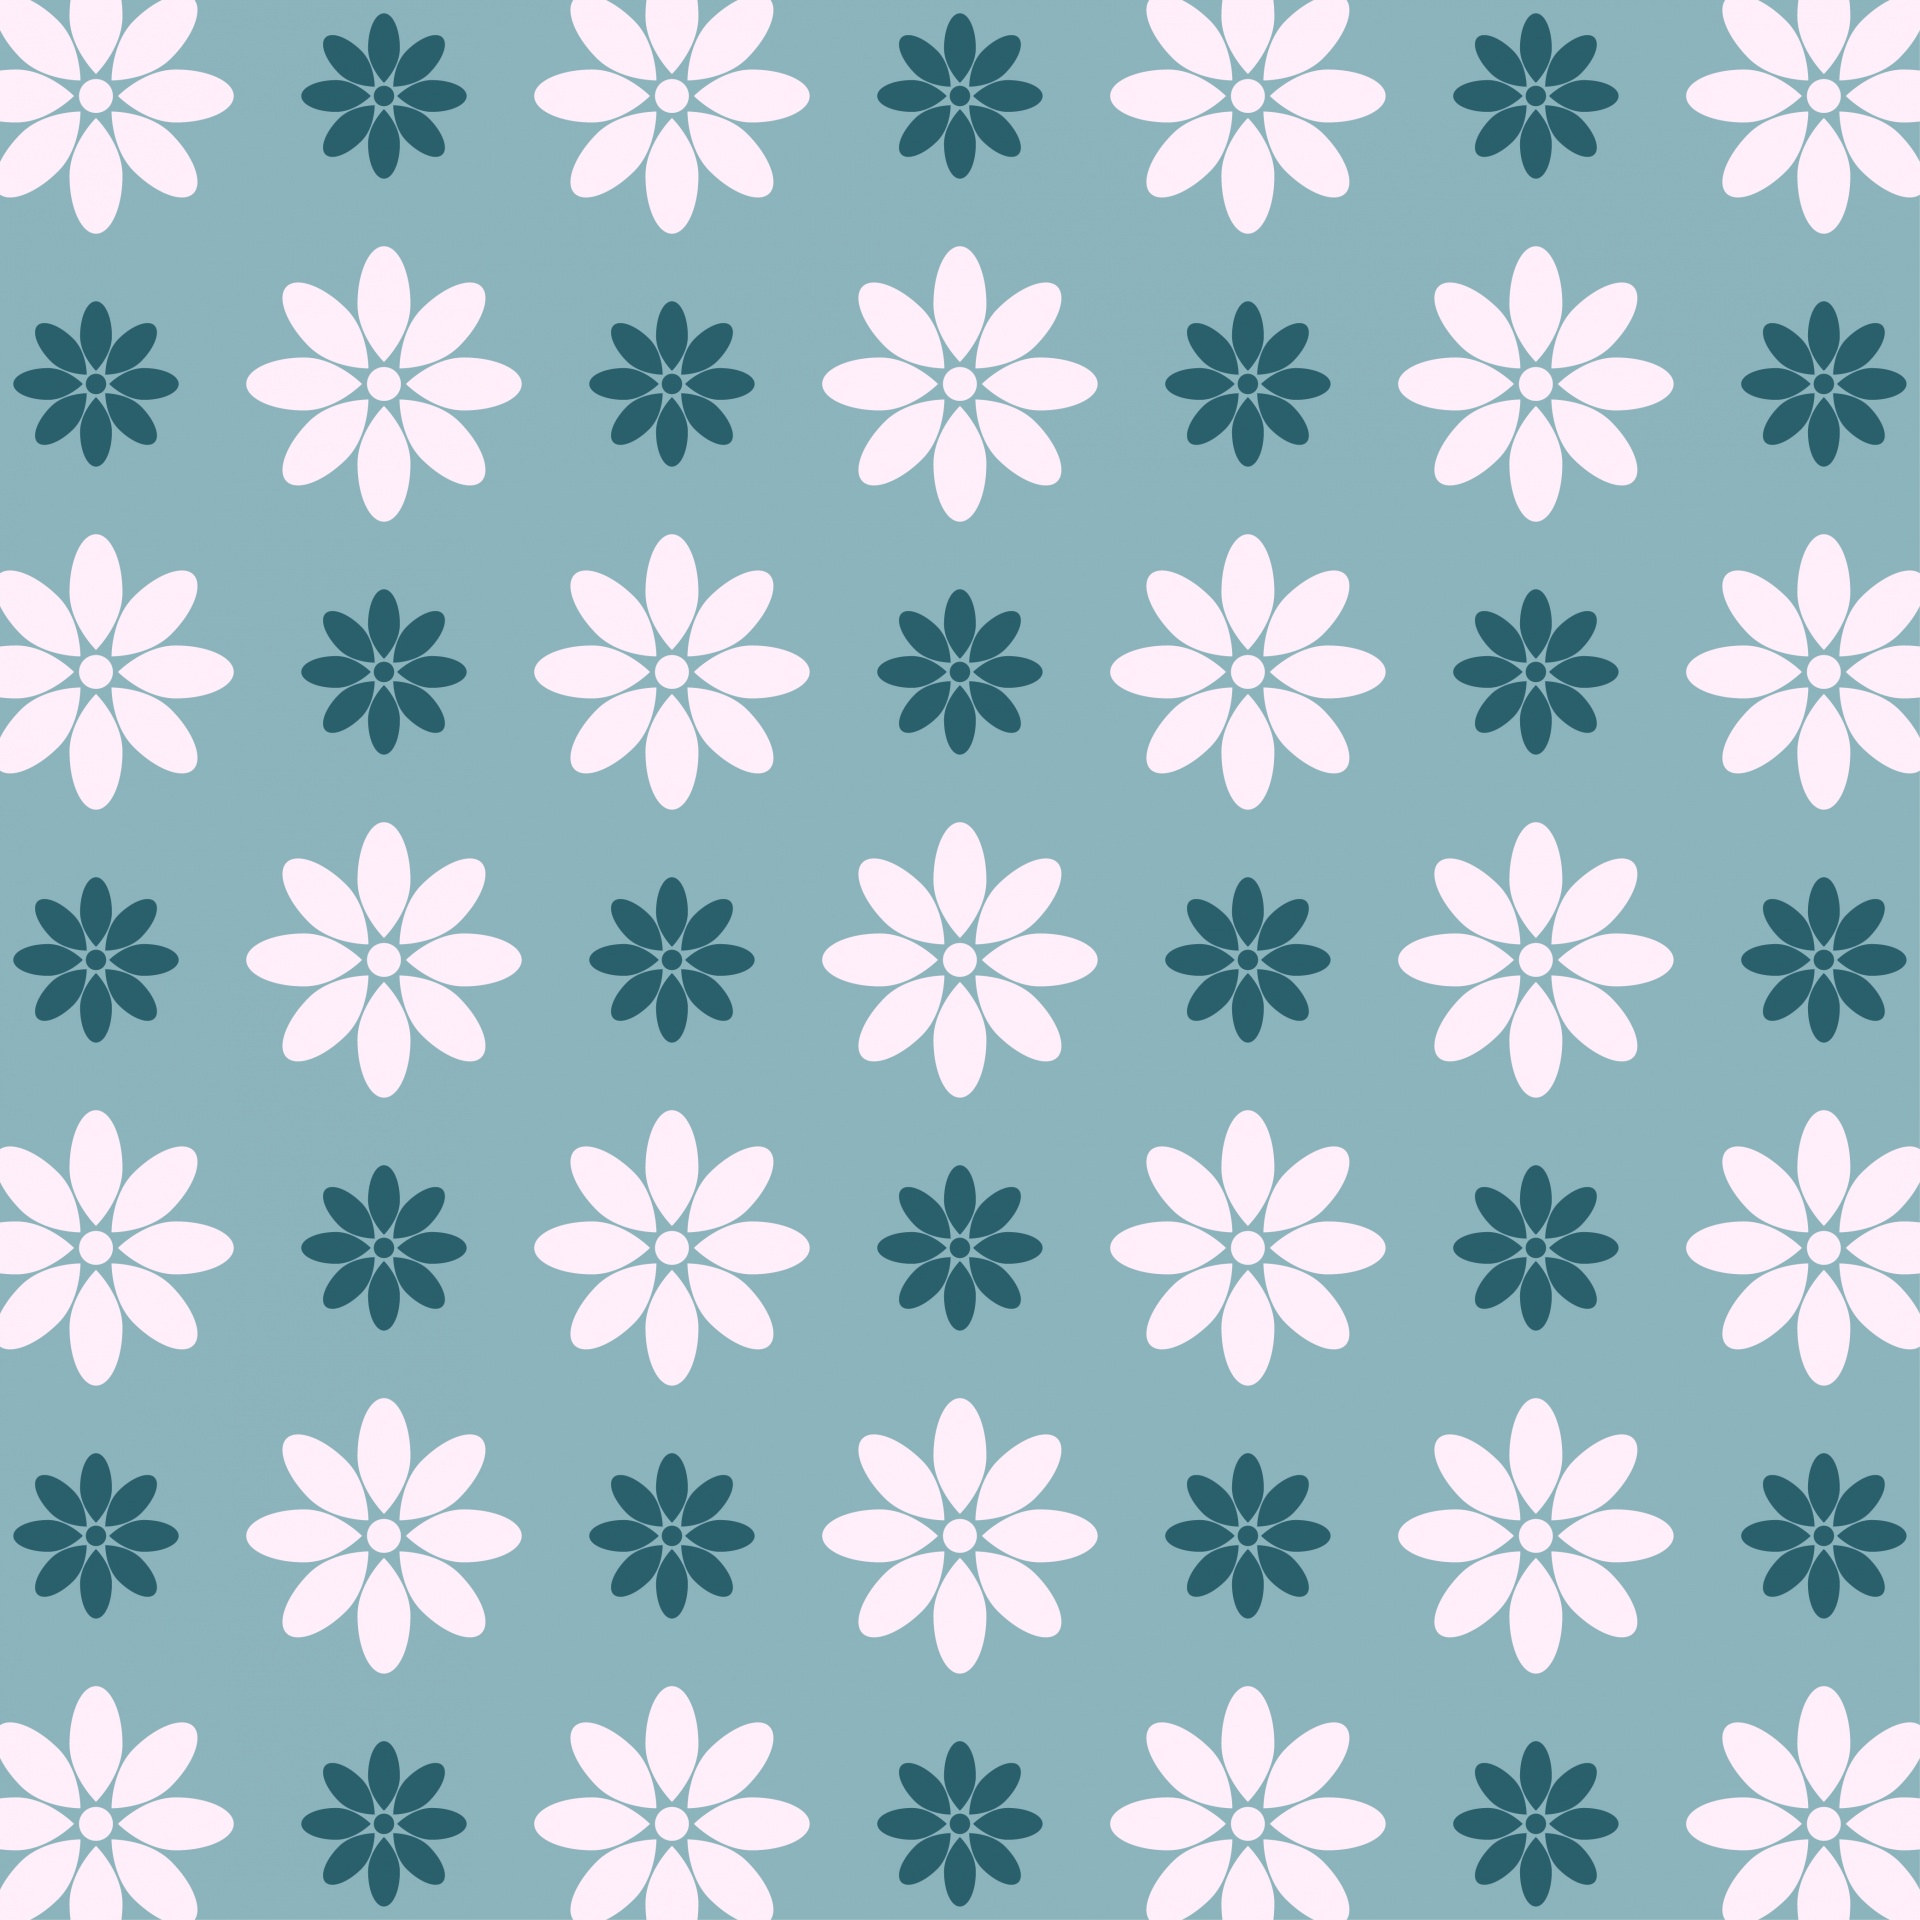 Wallpaper Floral padrão de fundo